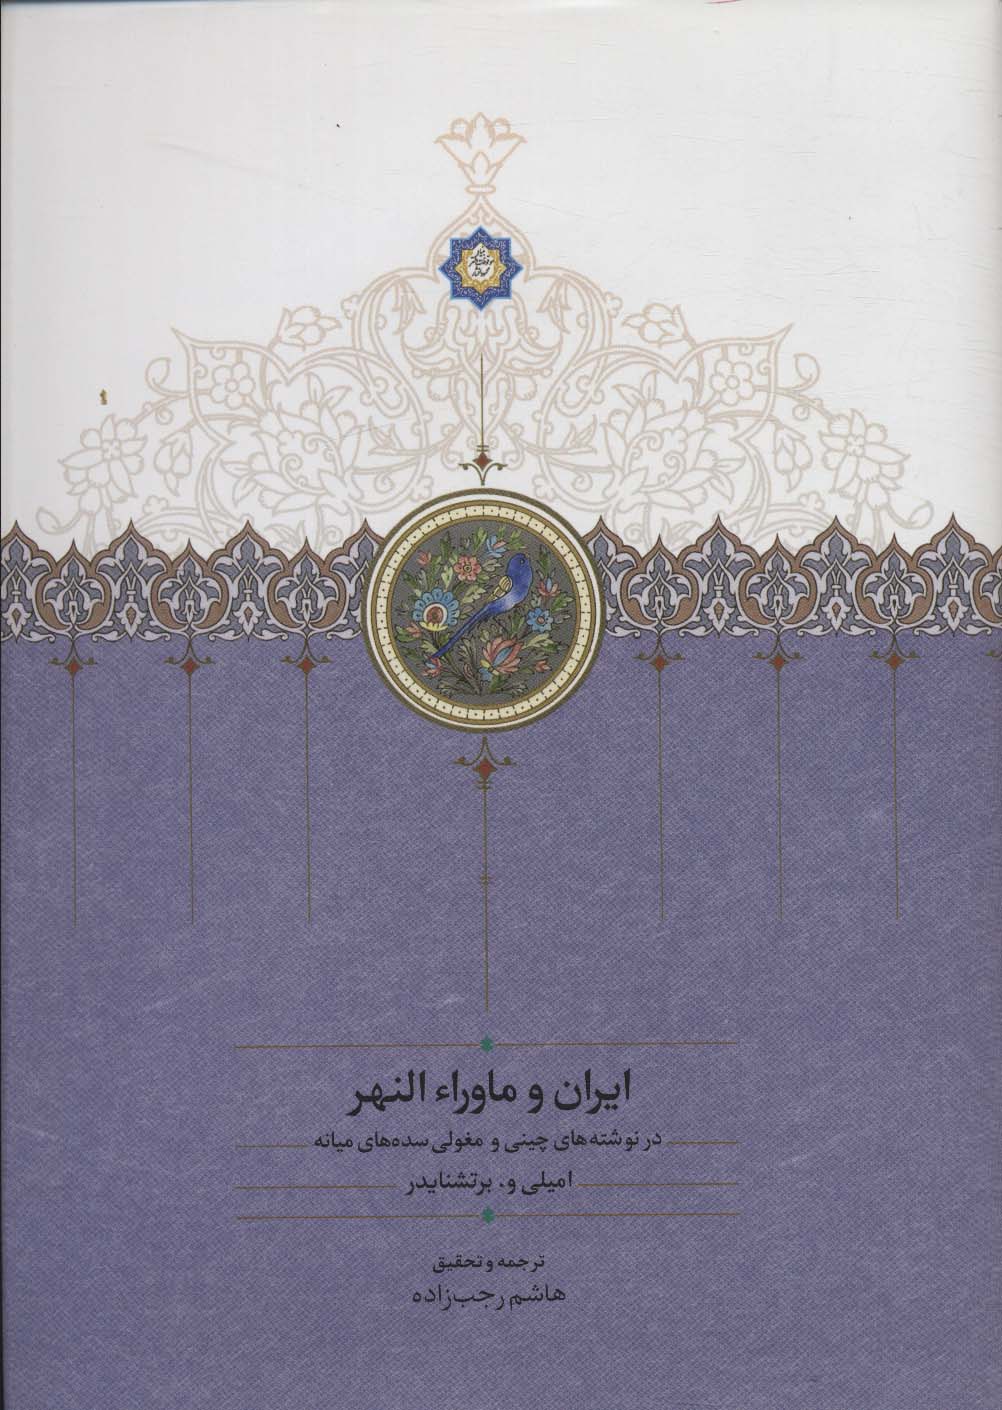  کتاب ایران و ماورا النهر